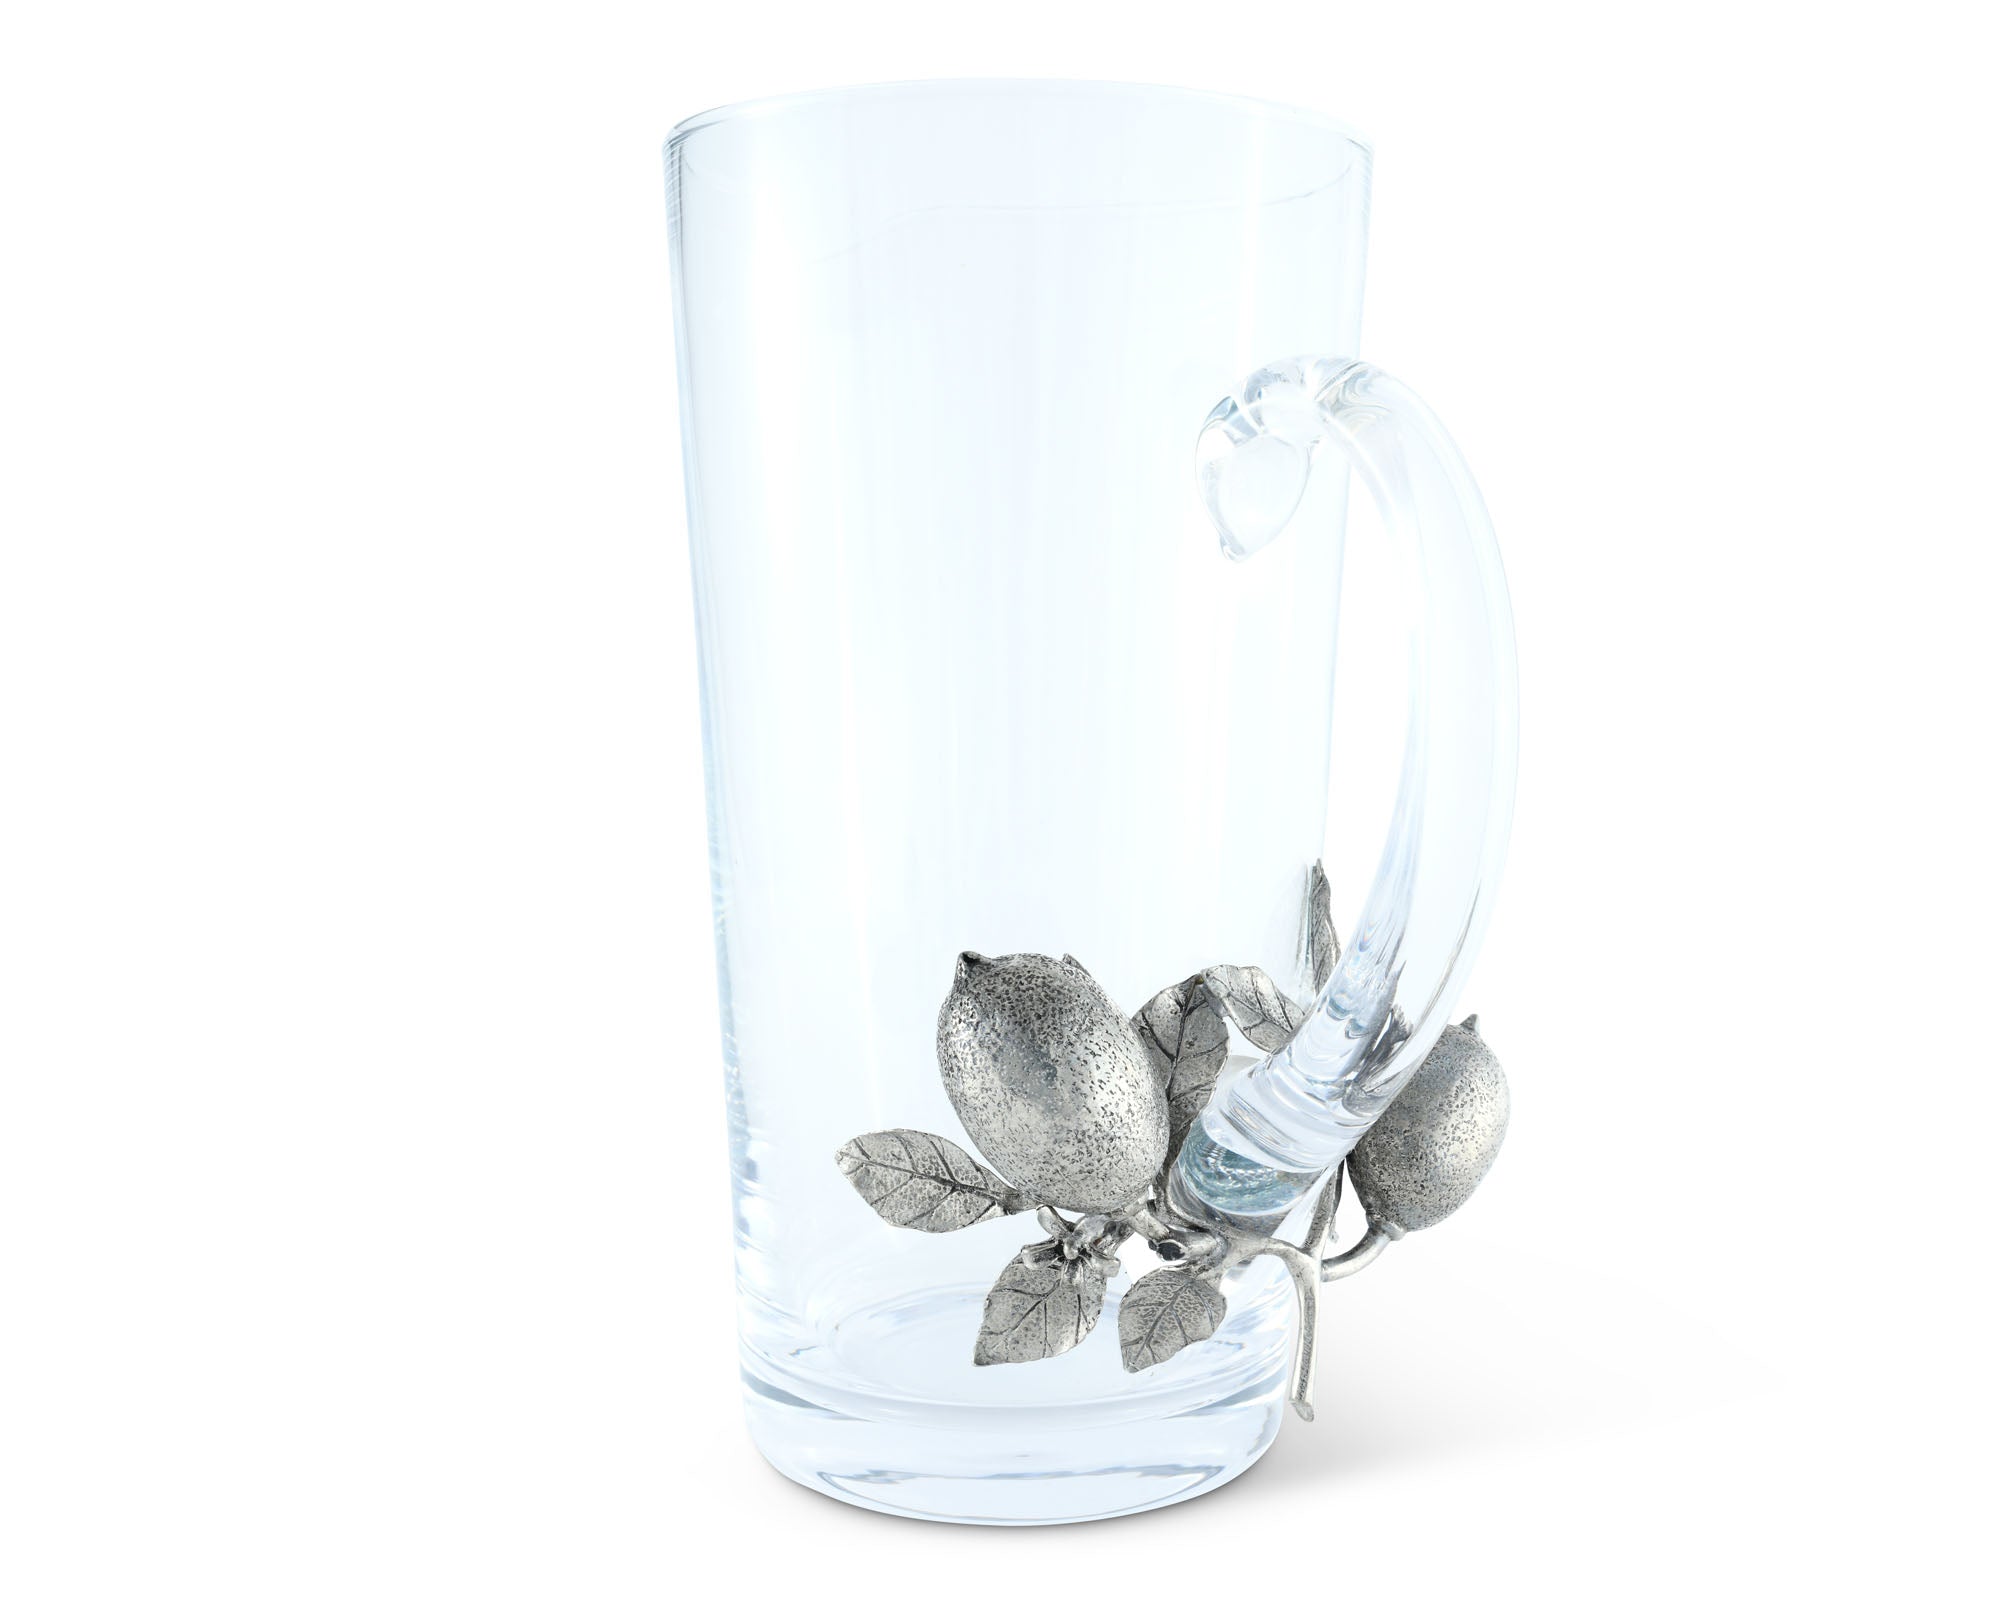 Vagabond House Glass Pitcher Pewter Lemon Bouquet Handle Product Image